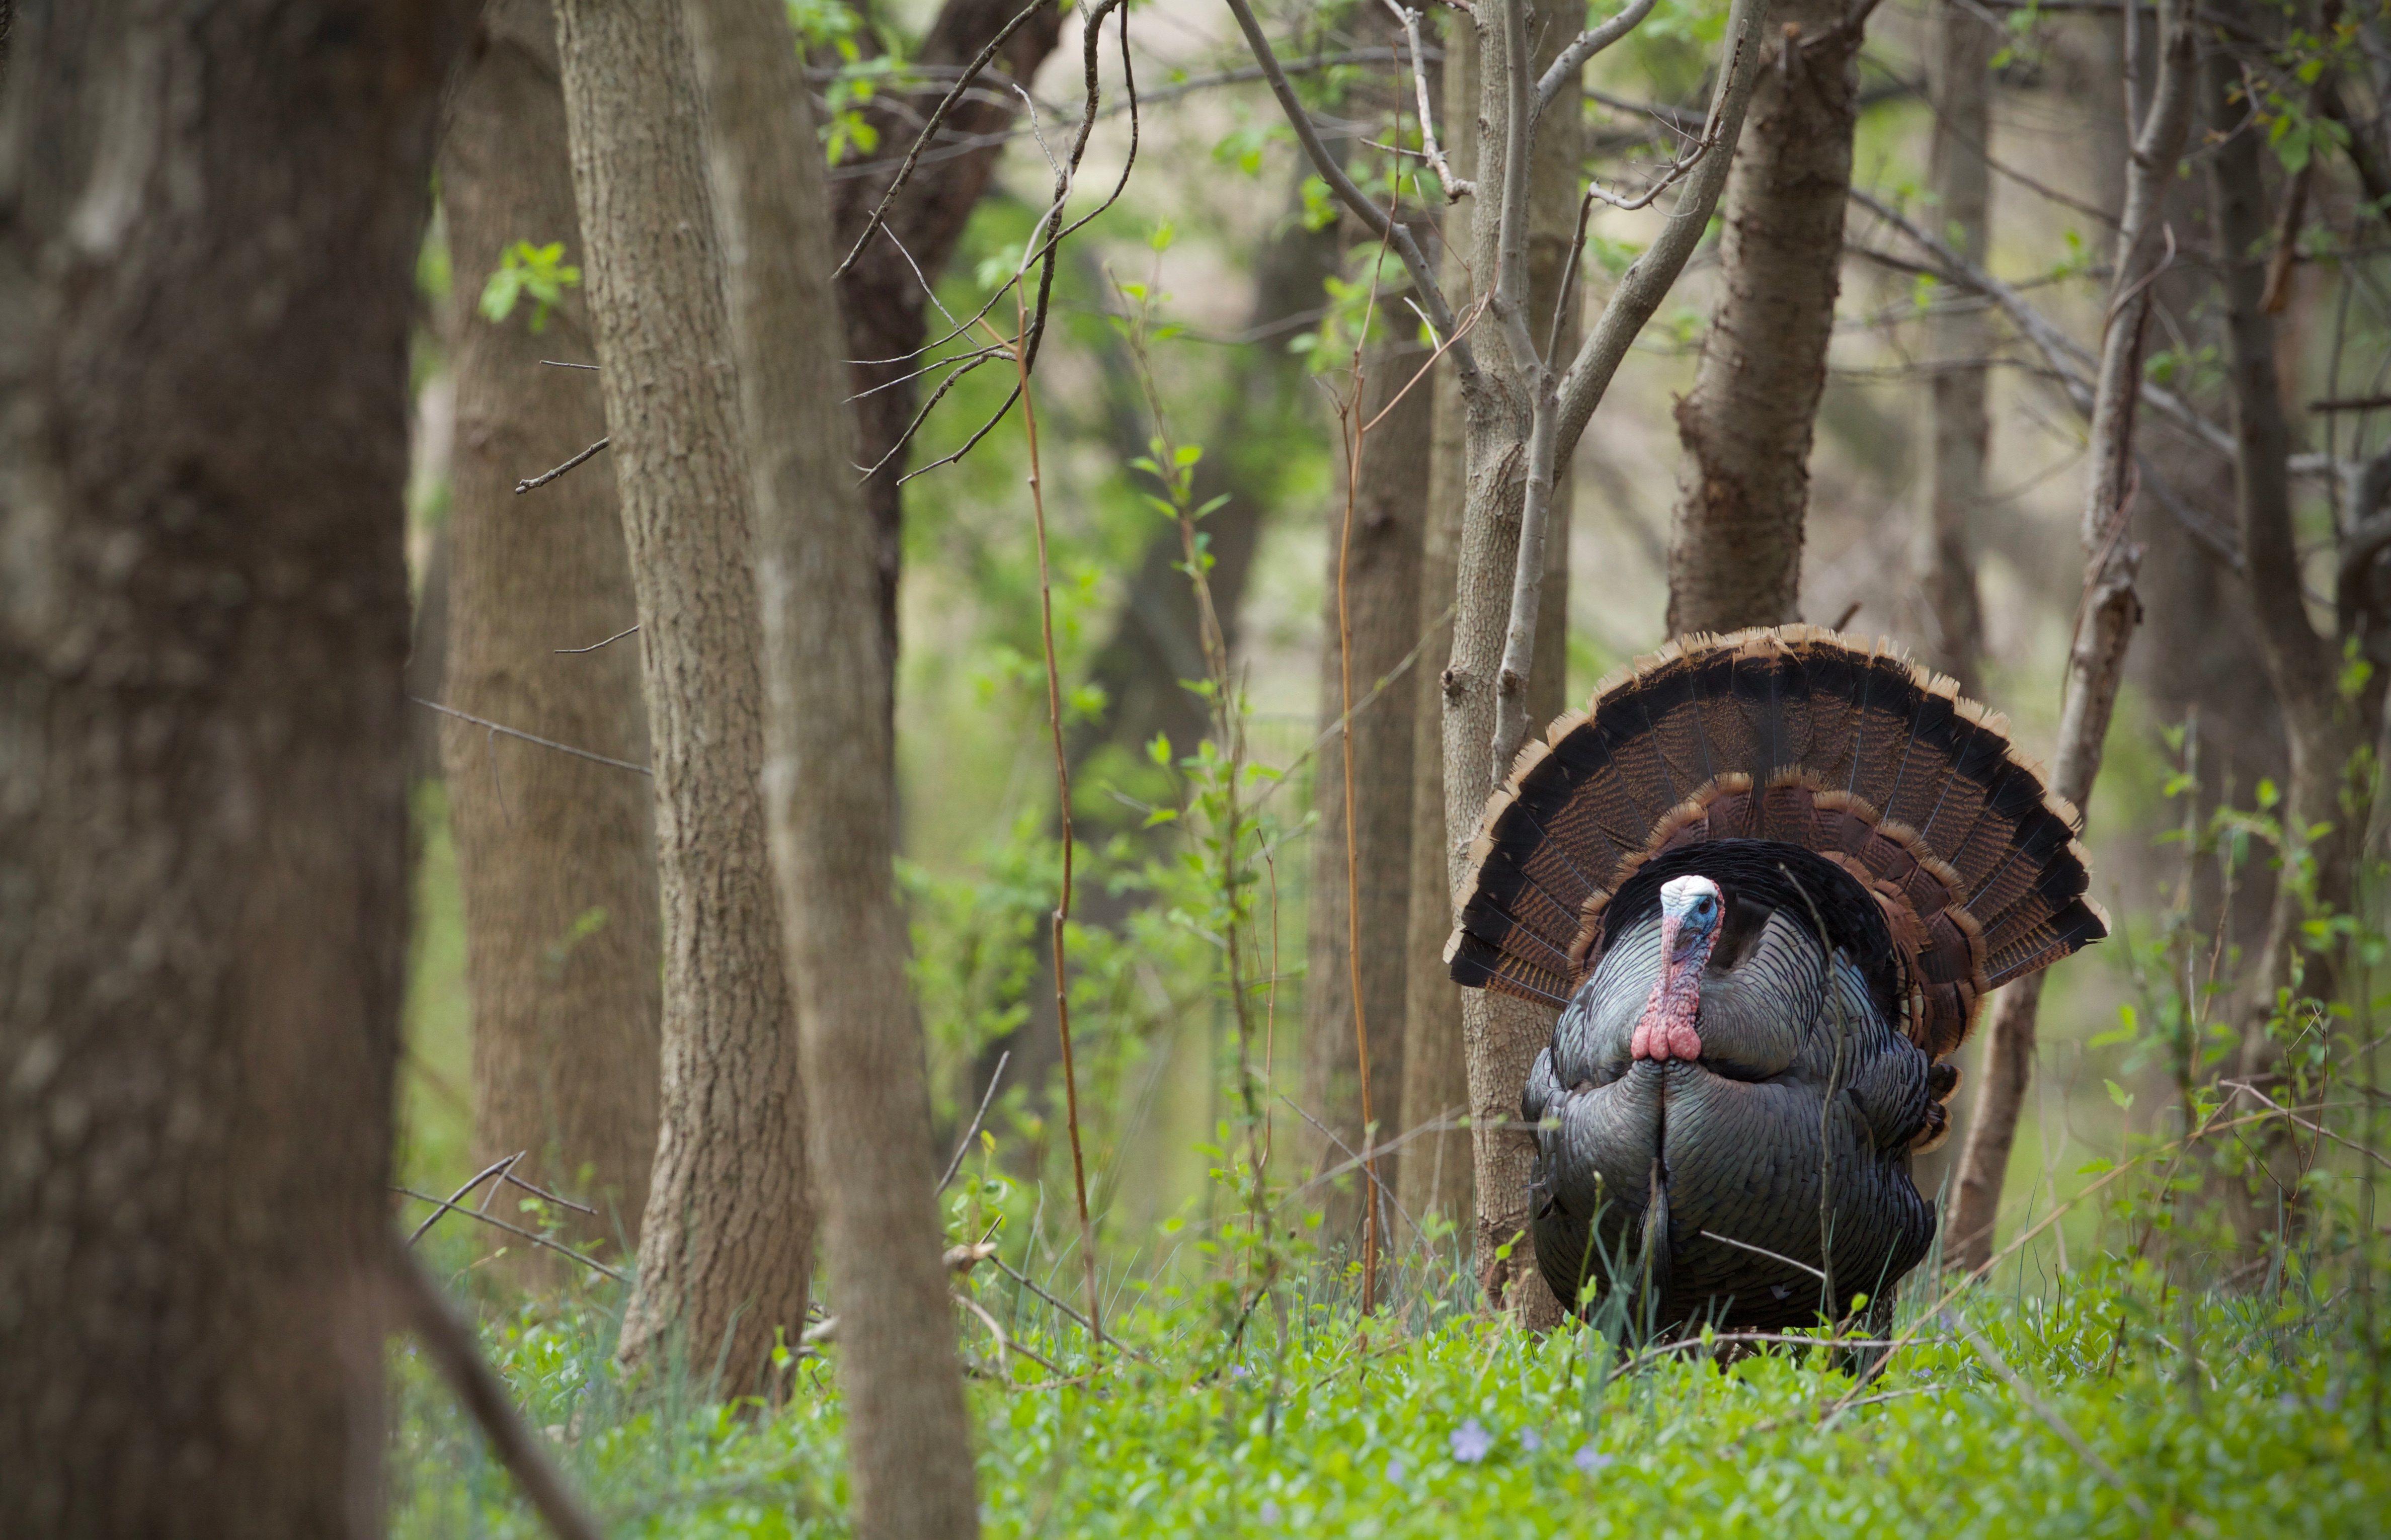 Report: TX Habitat Loss Impacts Wildlife, Hunting, Fishing